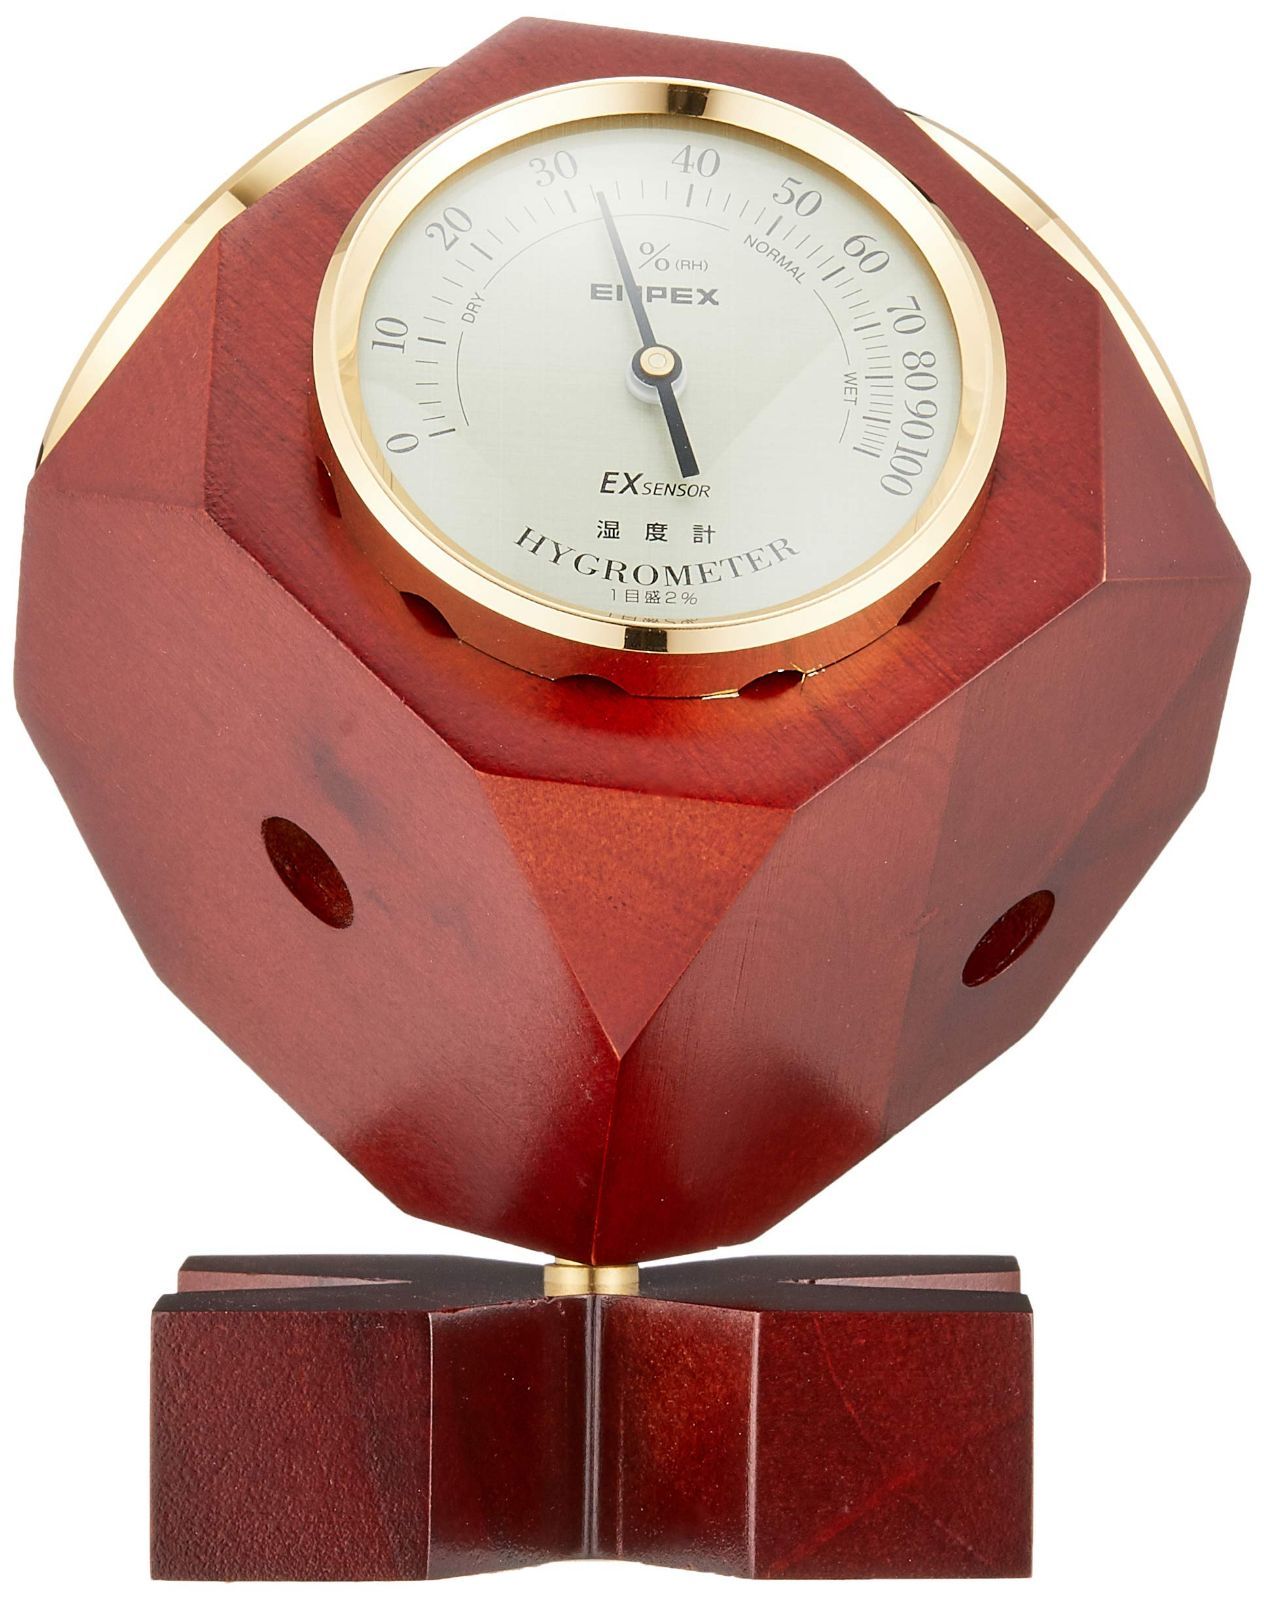 エンペックス気象計 温度湿度計 スーパーEXギャラリー気象計 温度 気圧 湿度 時計表示 置き用 日本製 ブラウン EX-743 36x14 - 2